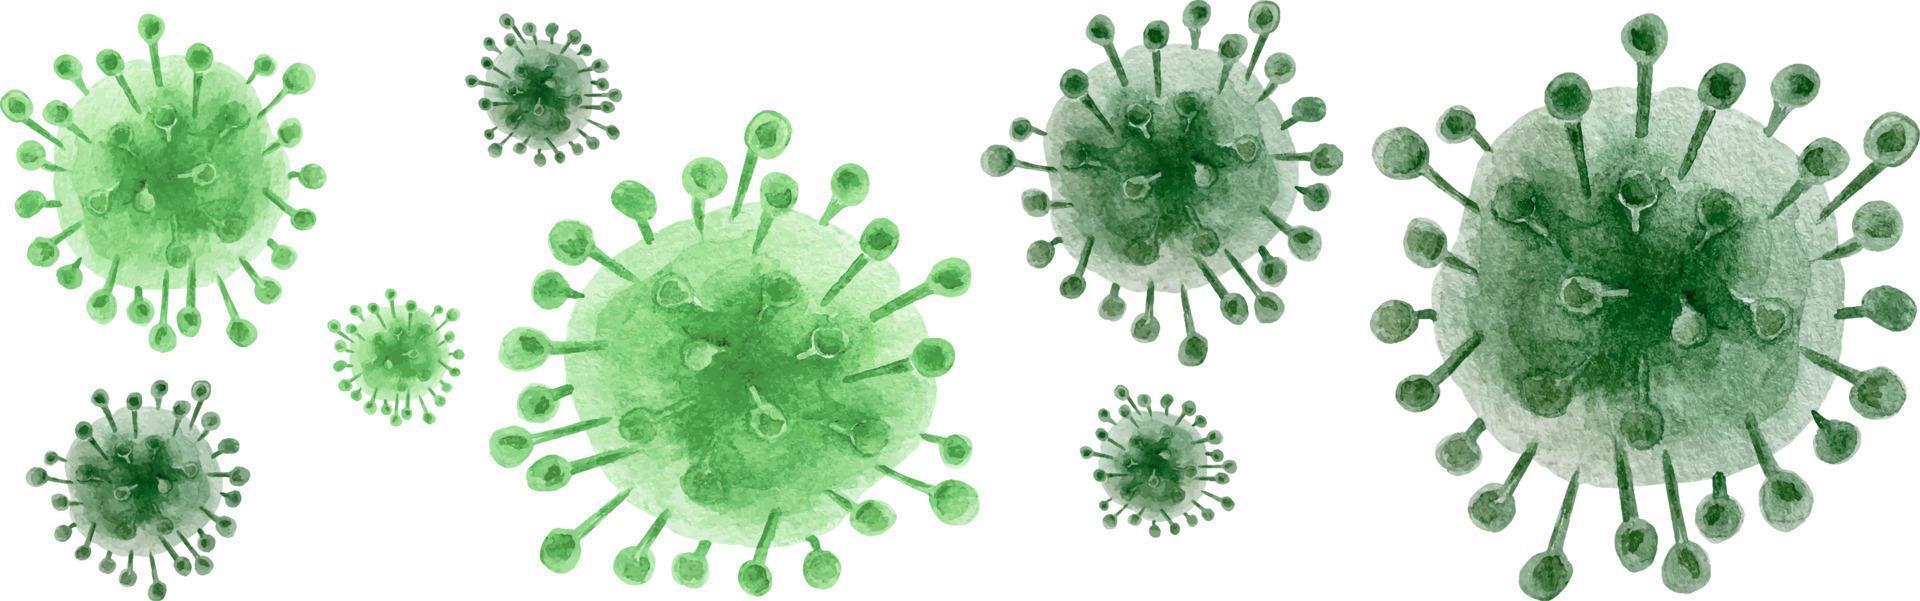 célula de coronavirus acuarela. un conjunto de tres imágenes estilizadas de virus. virus verde con manchas y trazos. vector